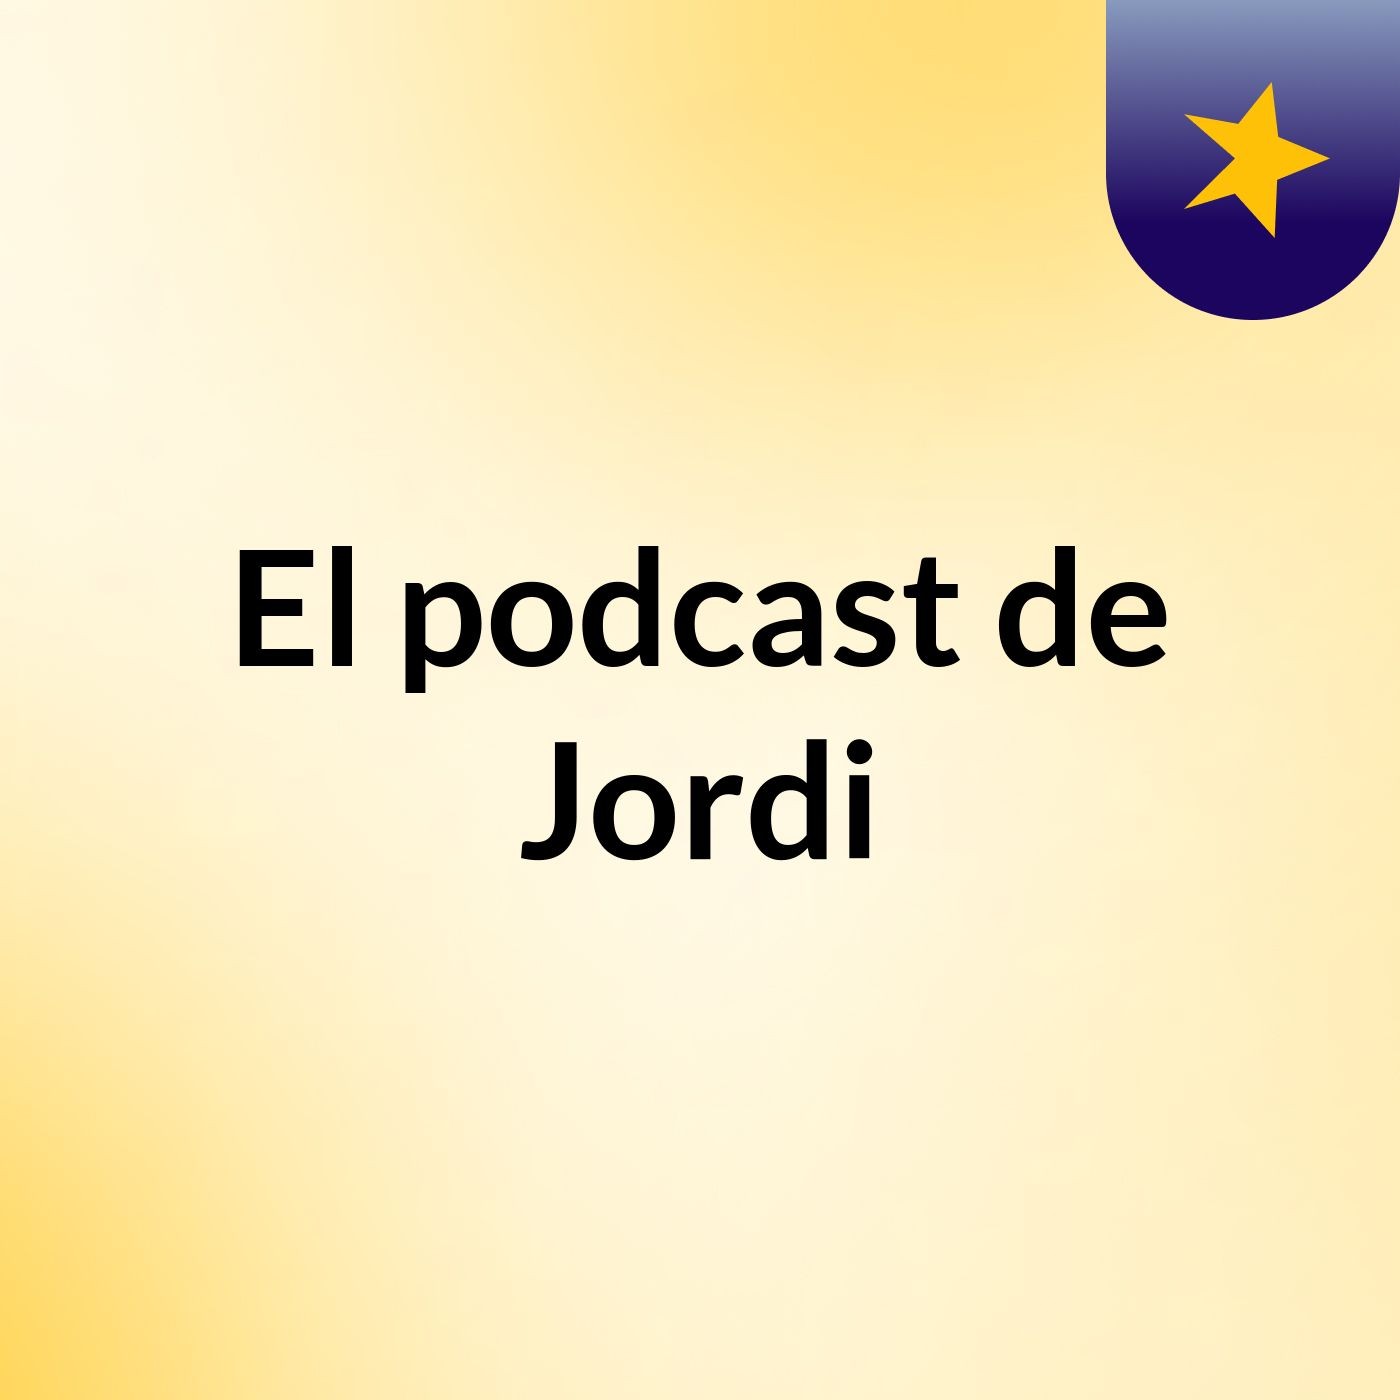 Episodio 4 - El podcast de Jordi